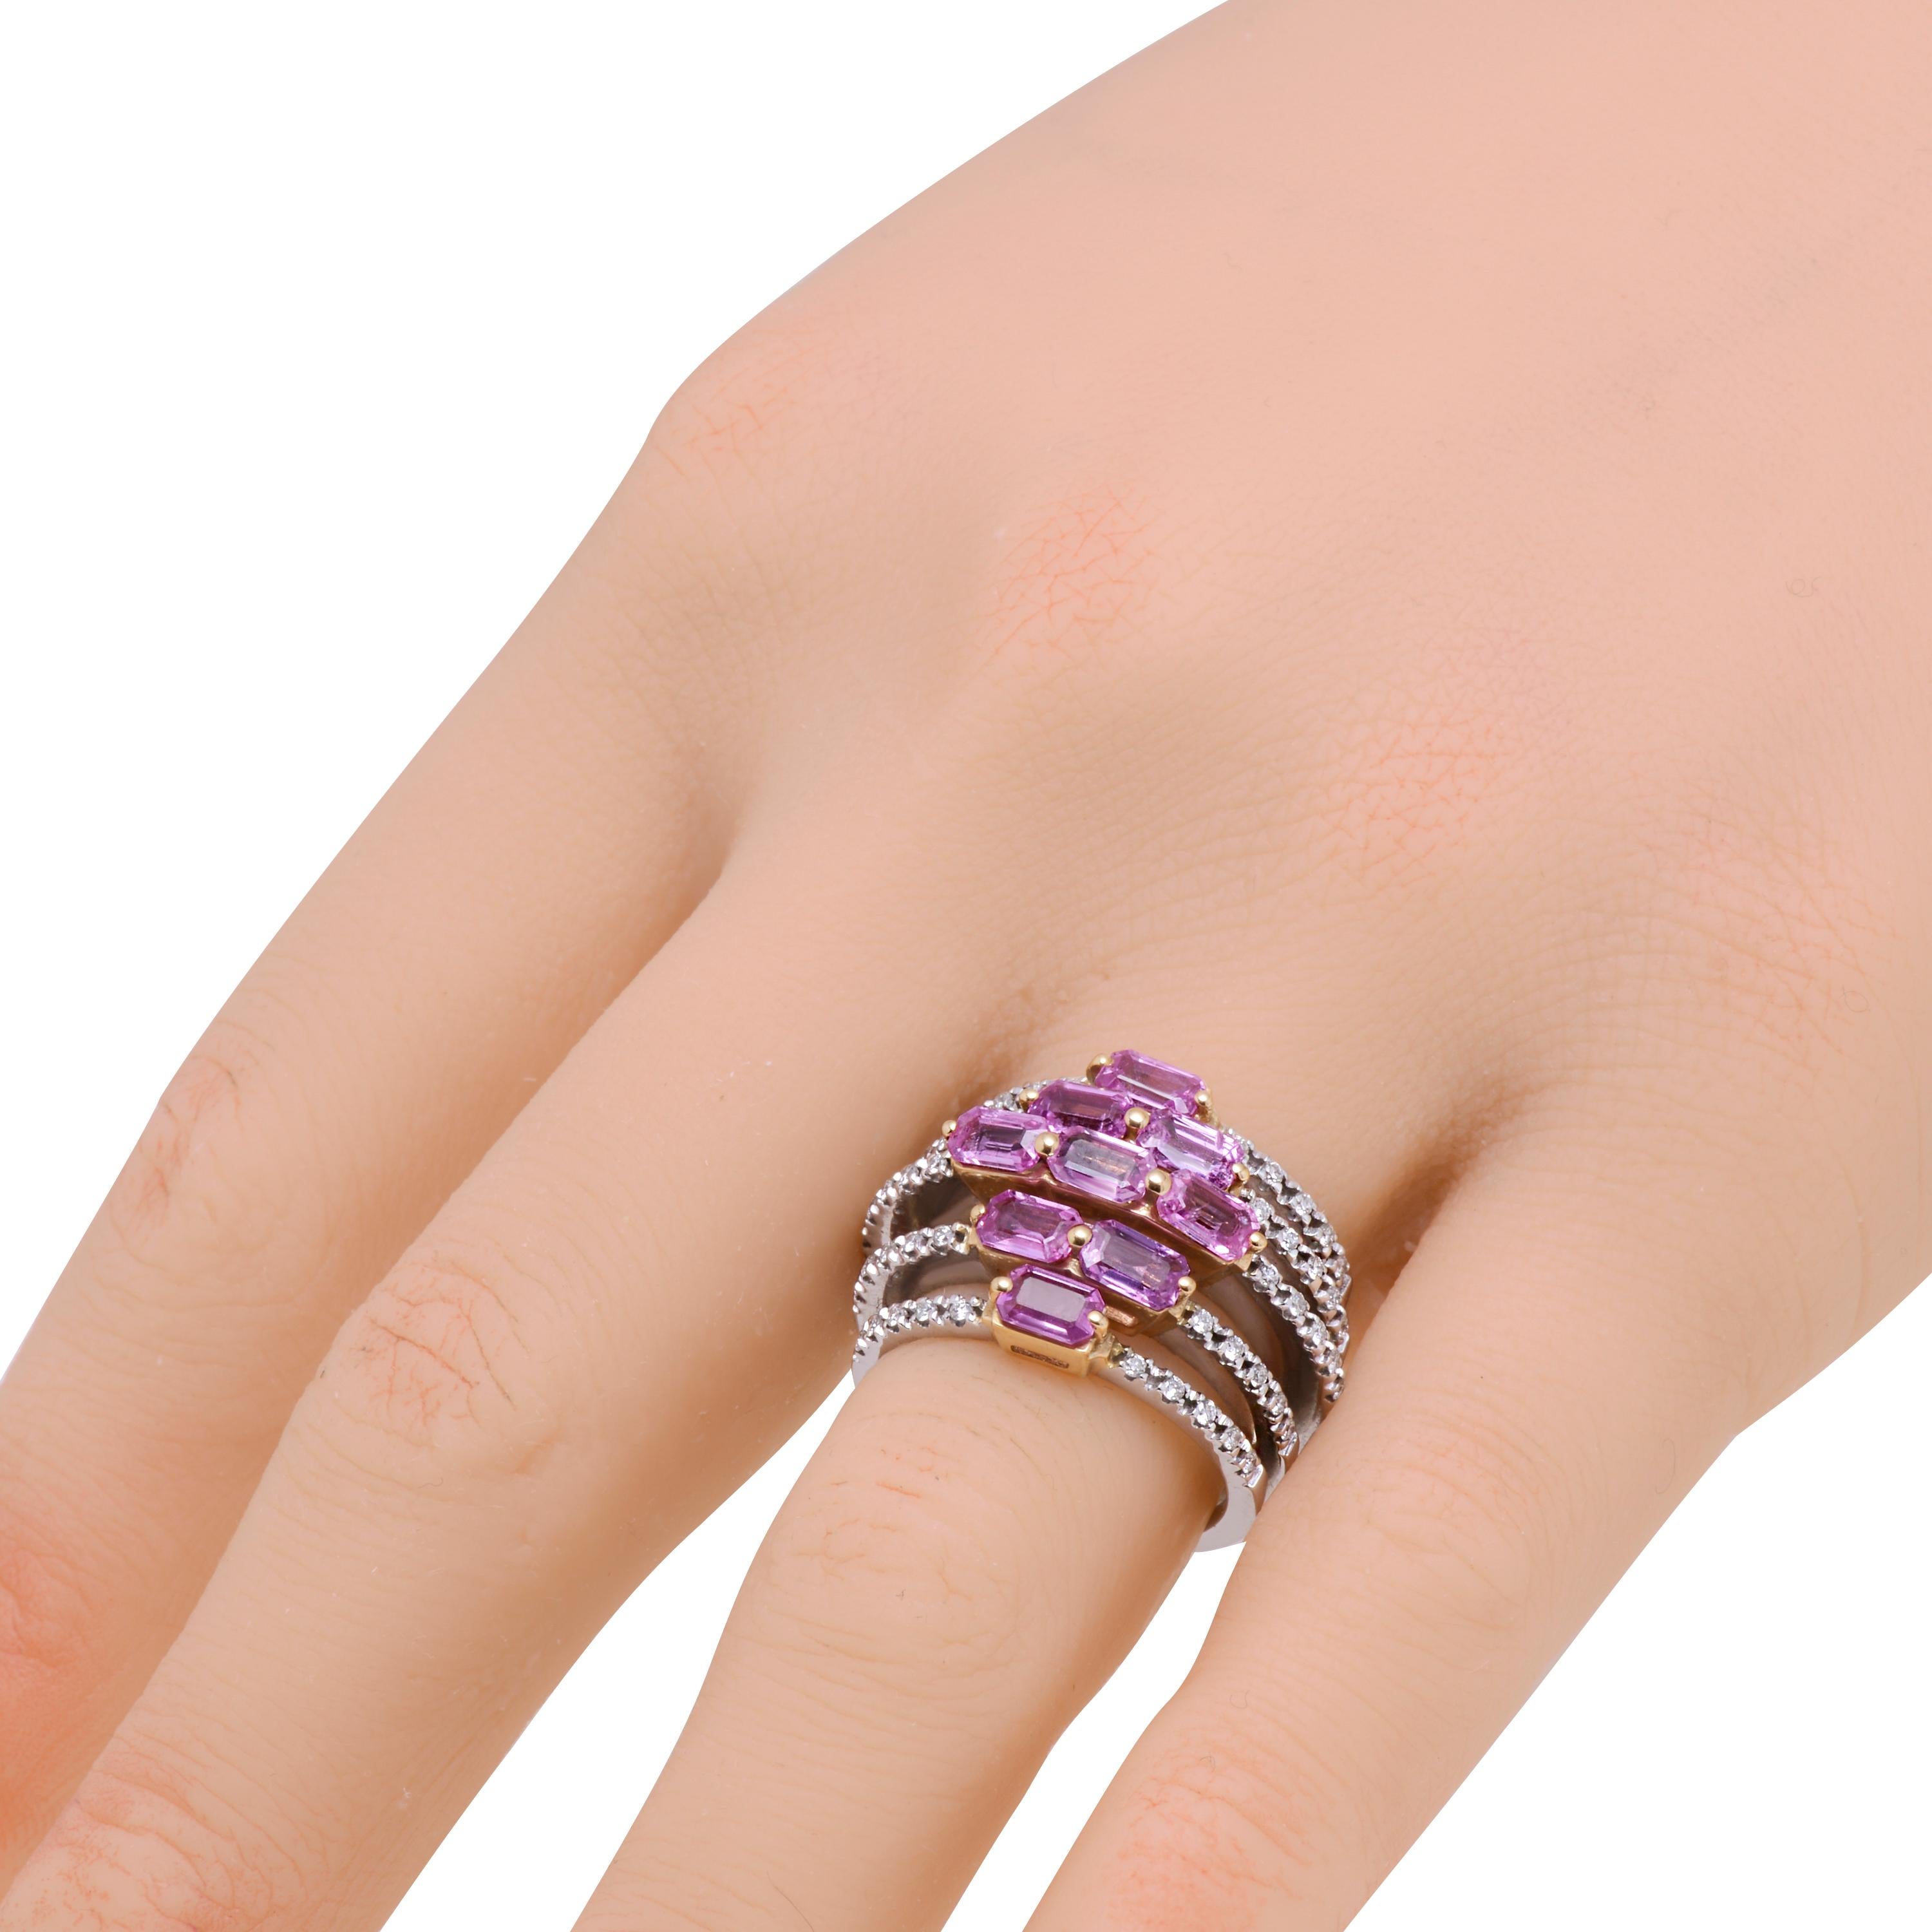 Dieser einzigartige ZYDO-Ring aus 18 Karat Weißgold besteht aus neun luxuriösen Lavendelsaphiren im Baguetteschliff (2,84 ct.), die in einem Diamantmuster angeordnet sind und mit einem mehrschichtigen Diamantpflaster (0,34 ct.) verziert sind. Die